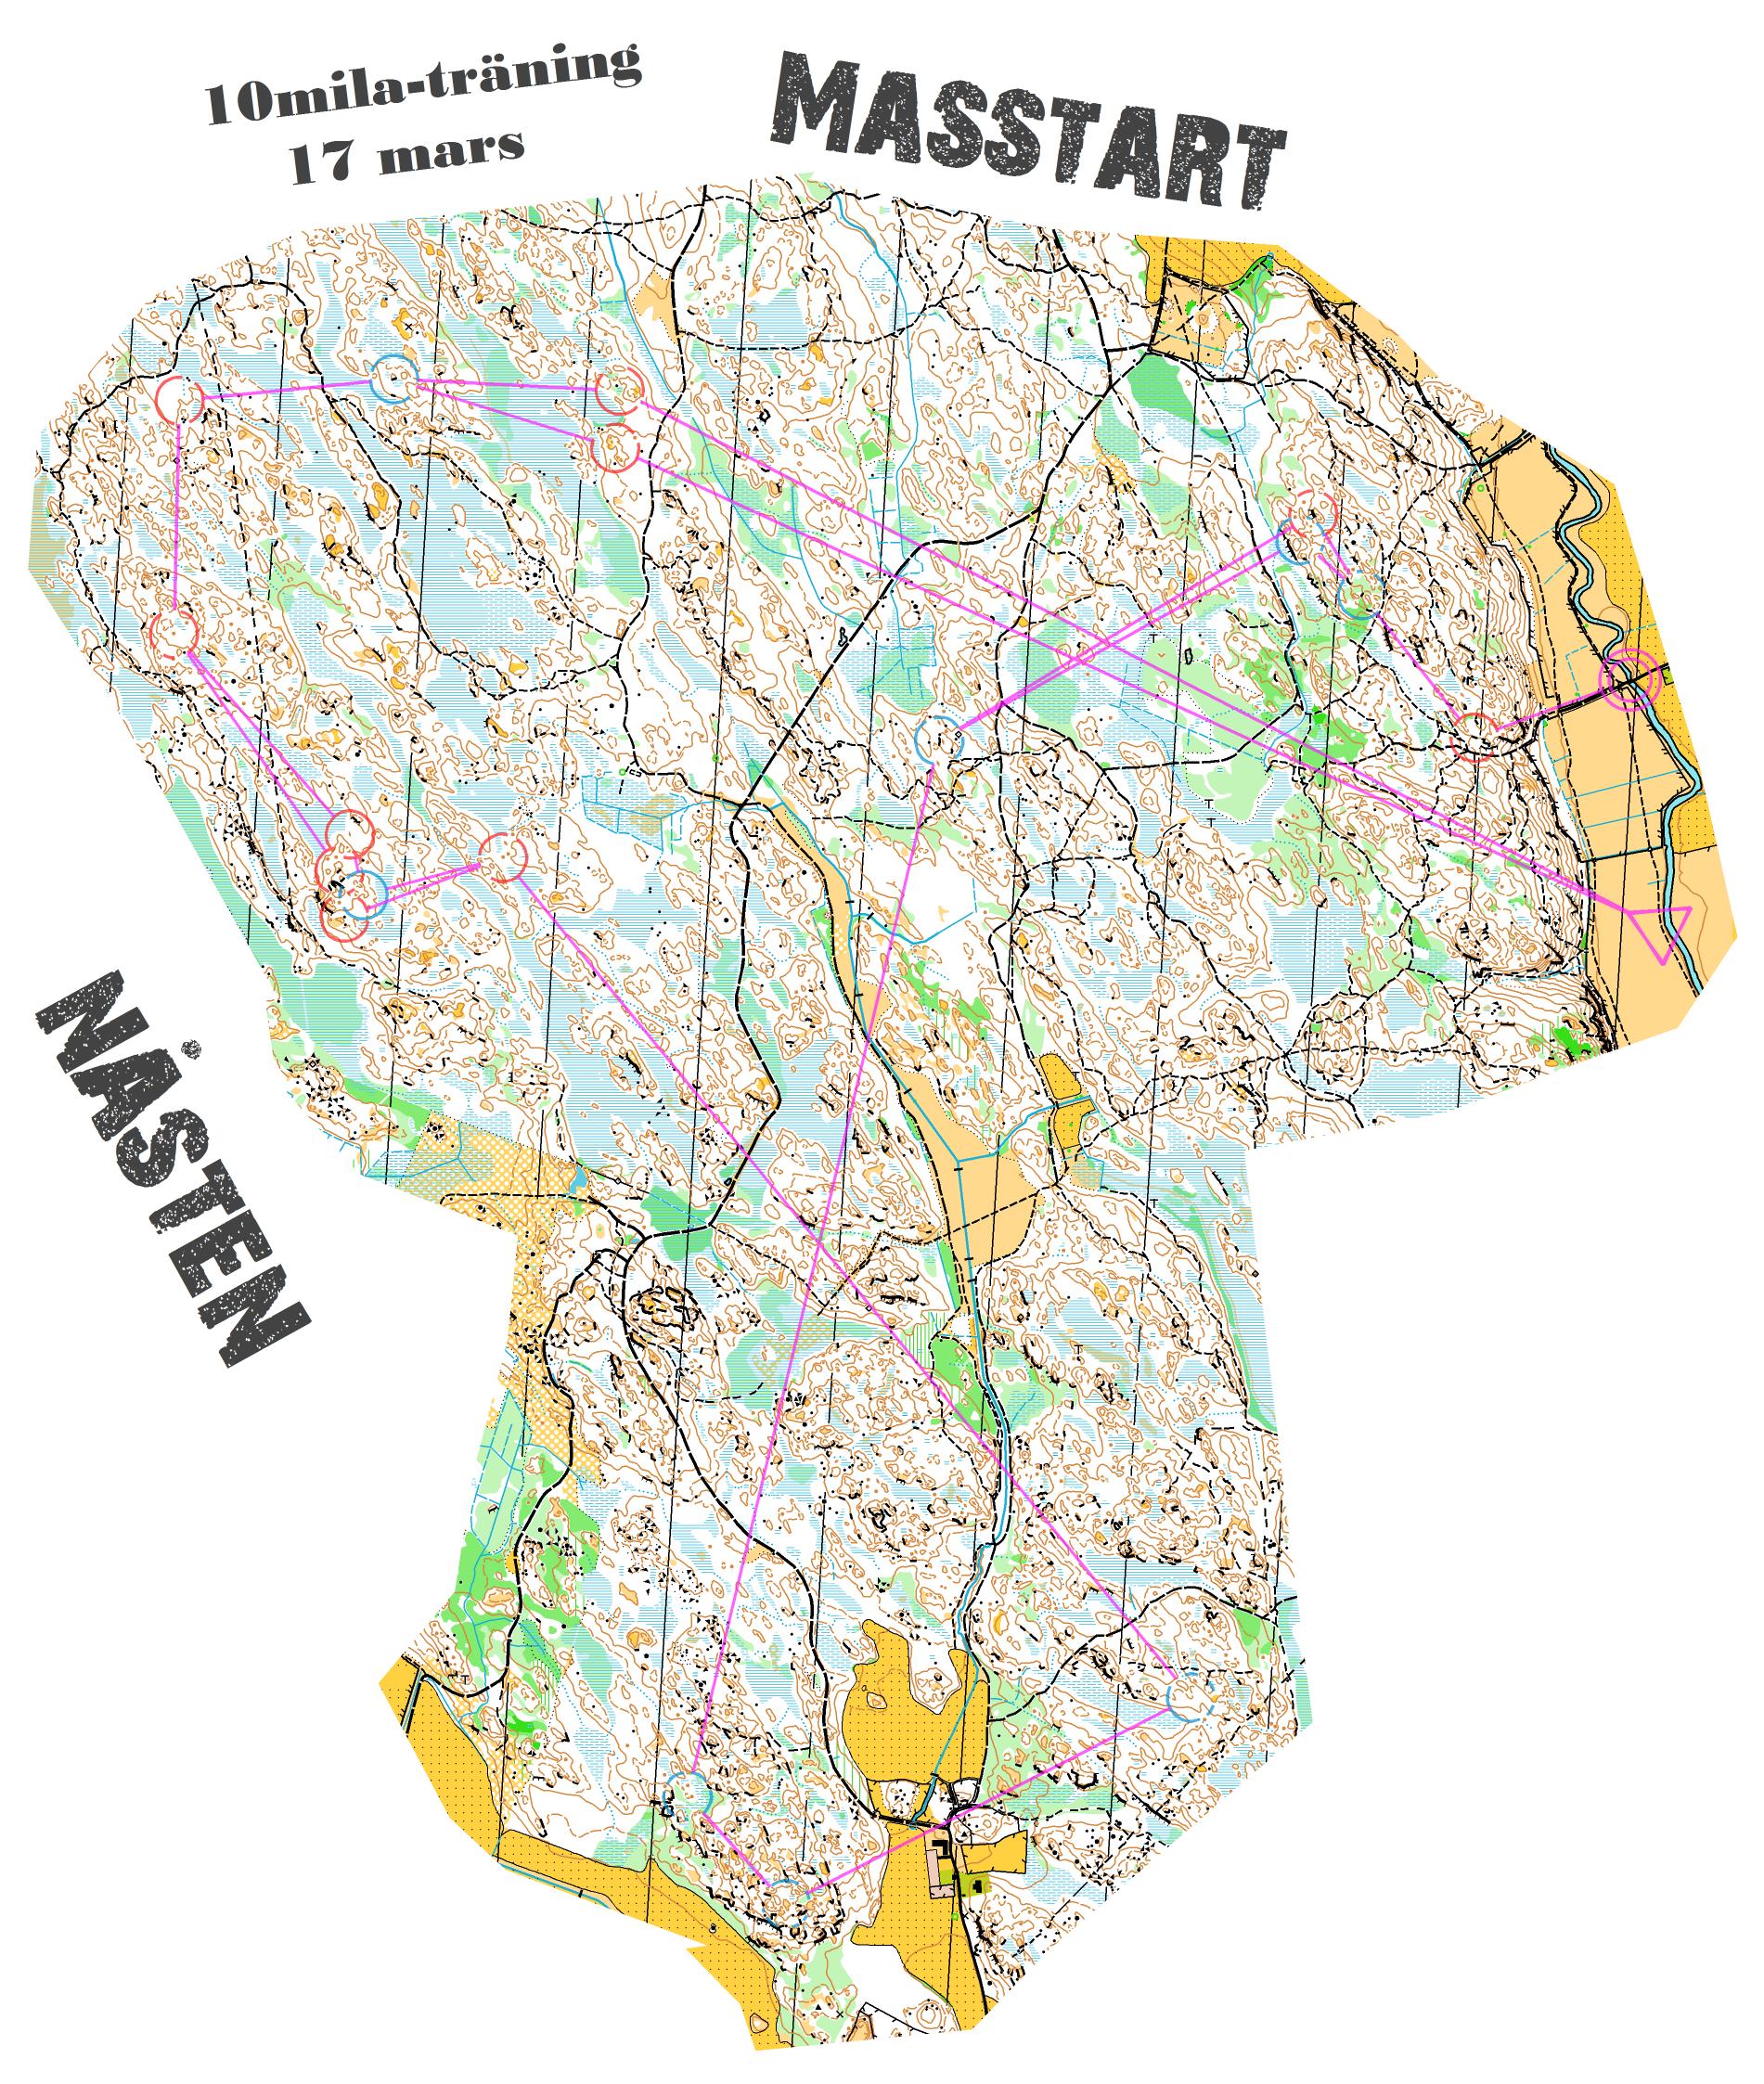 10mila-träning - Lång (2013-03-17)